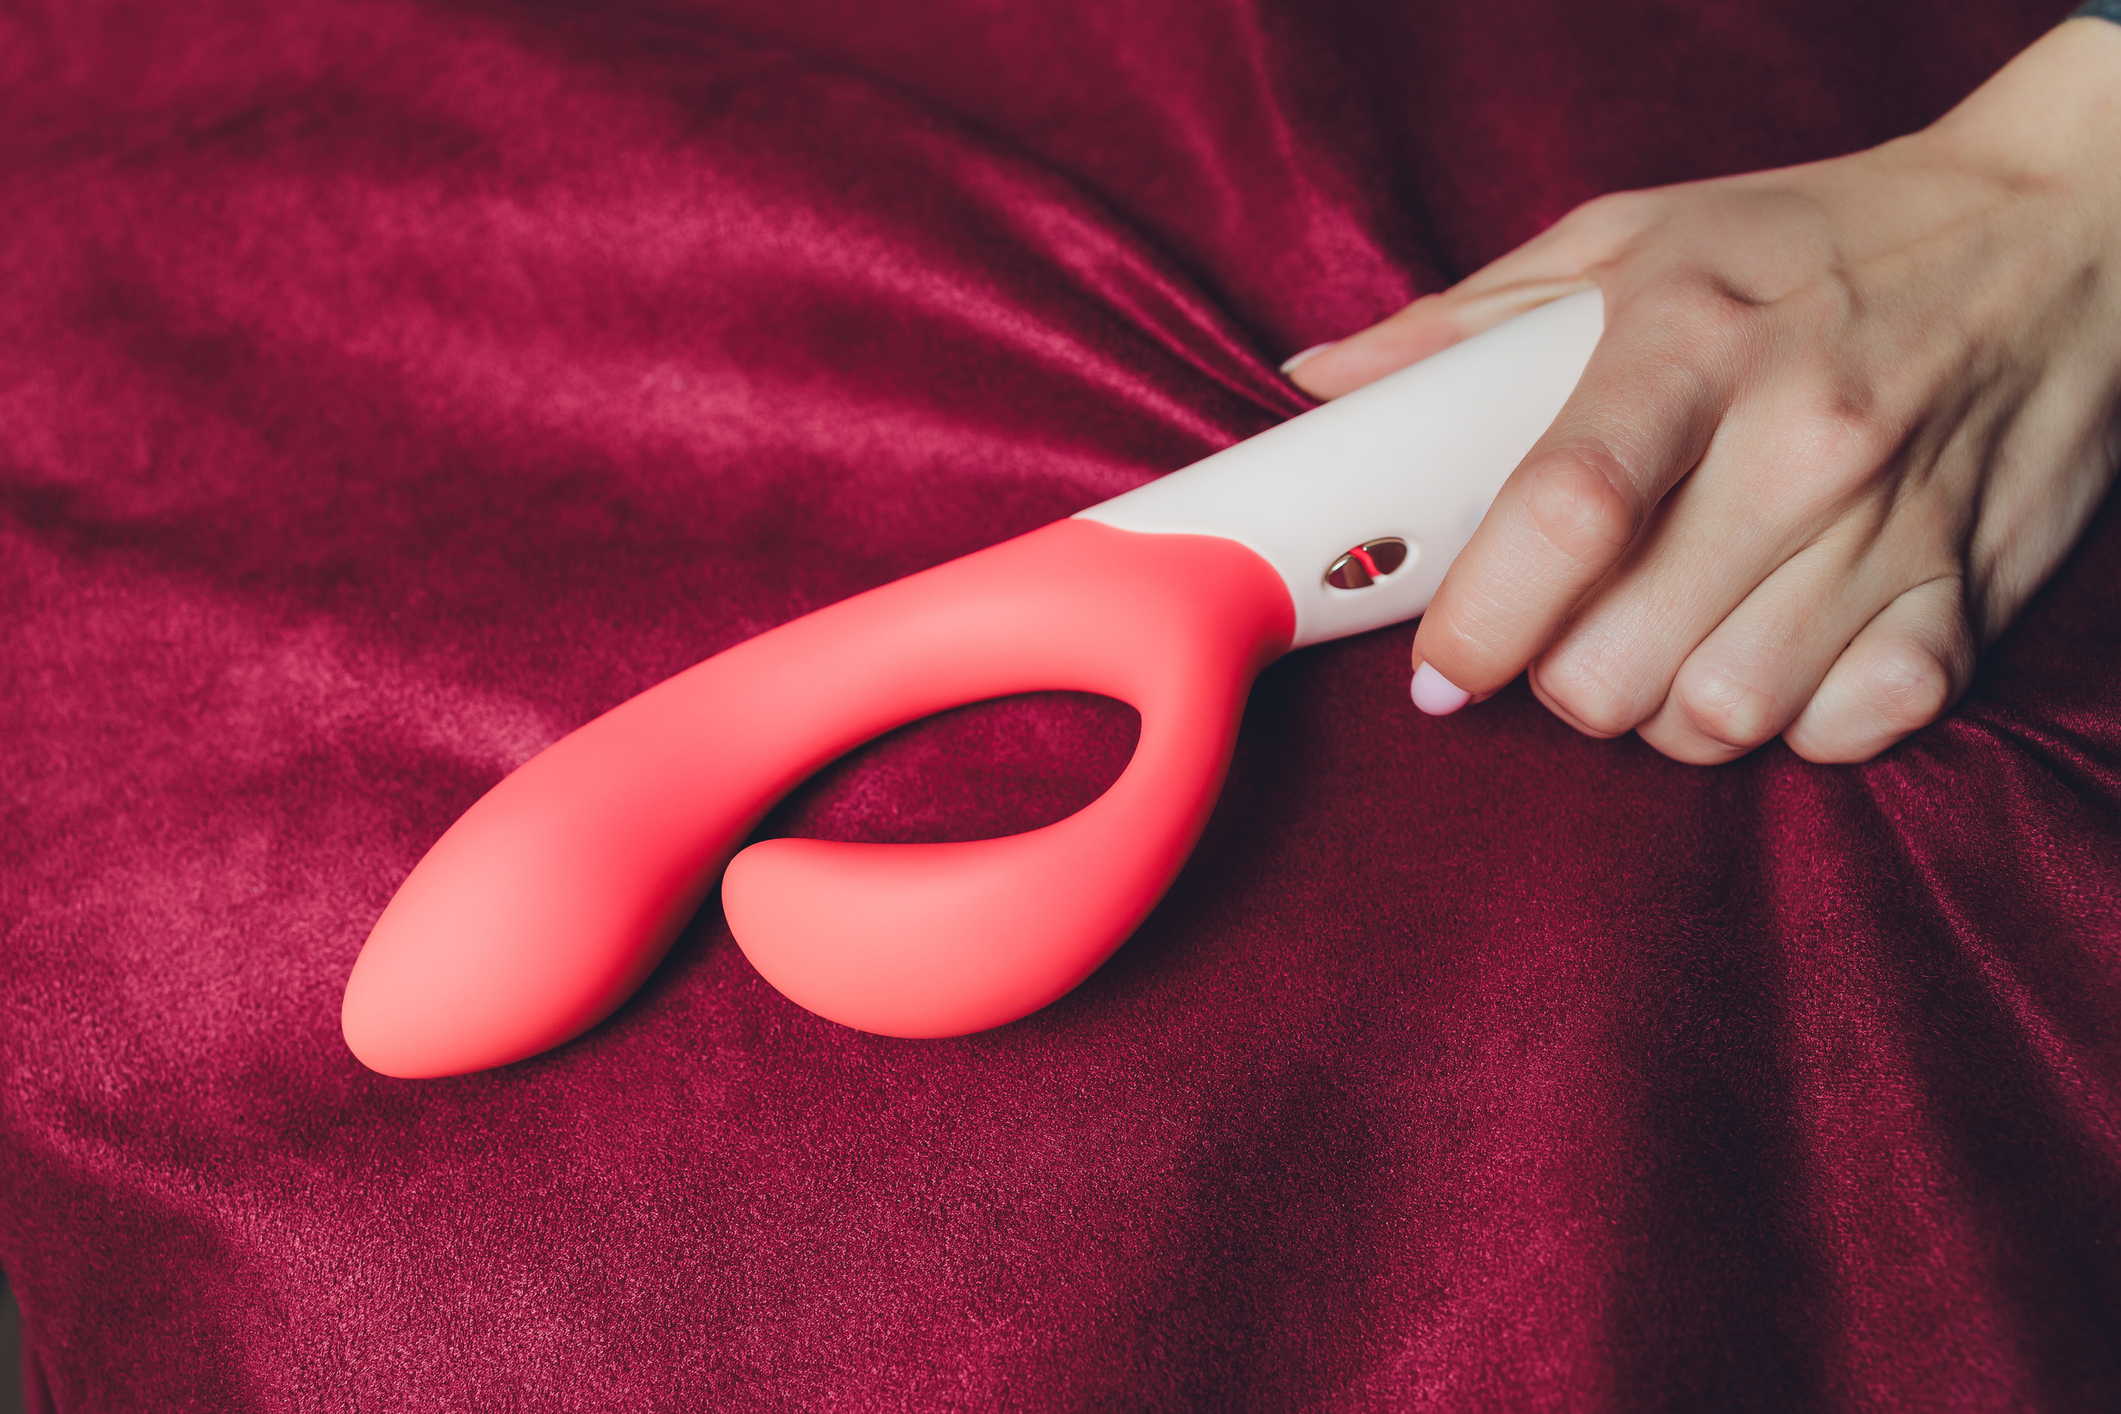 brinquedo sexual feito em casa Fotos pornográficas